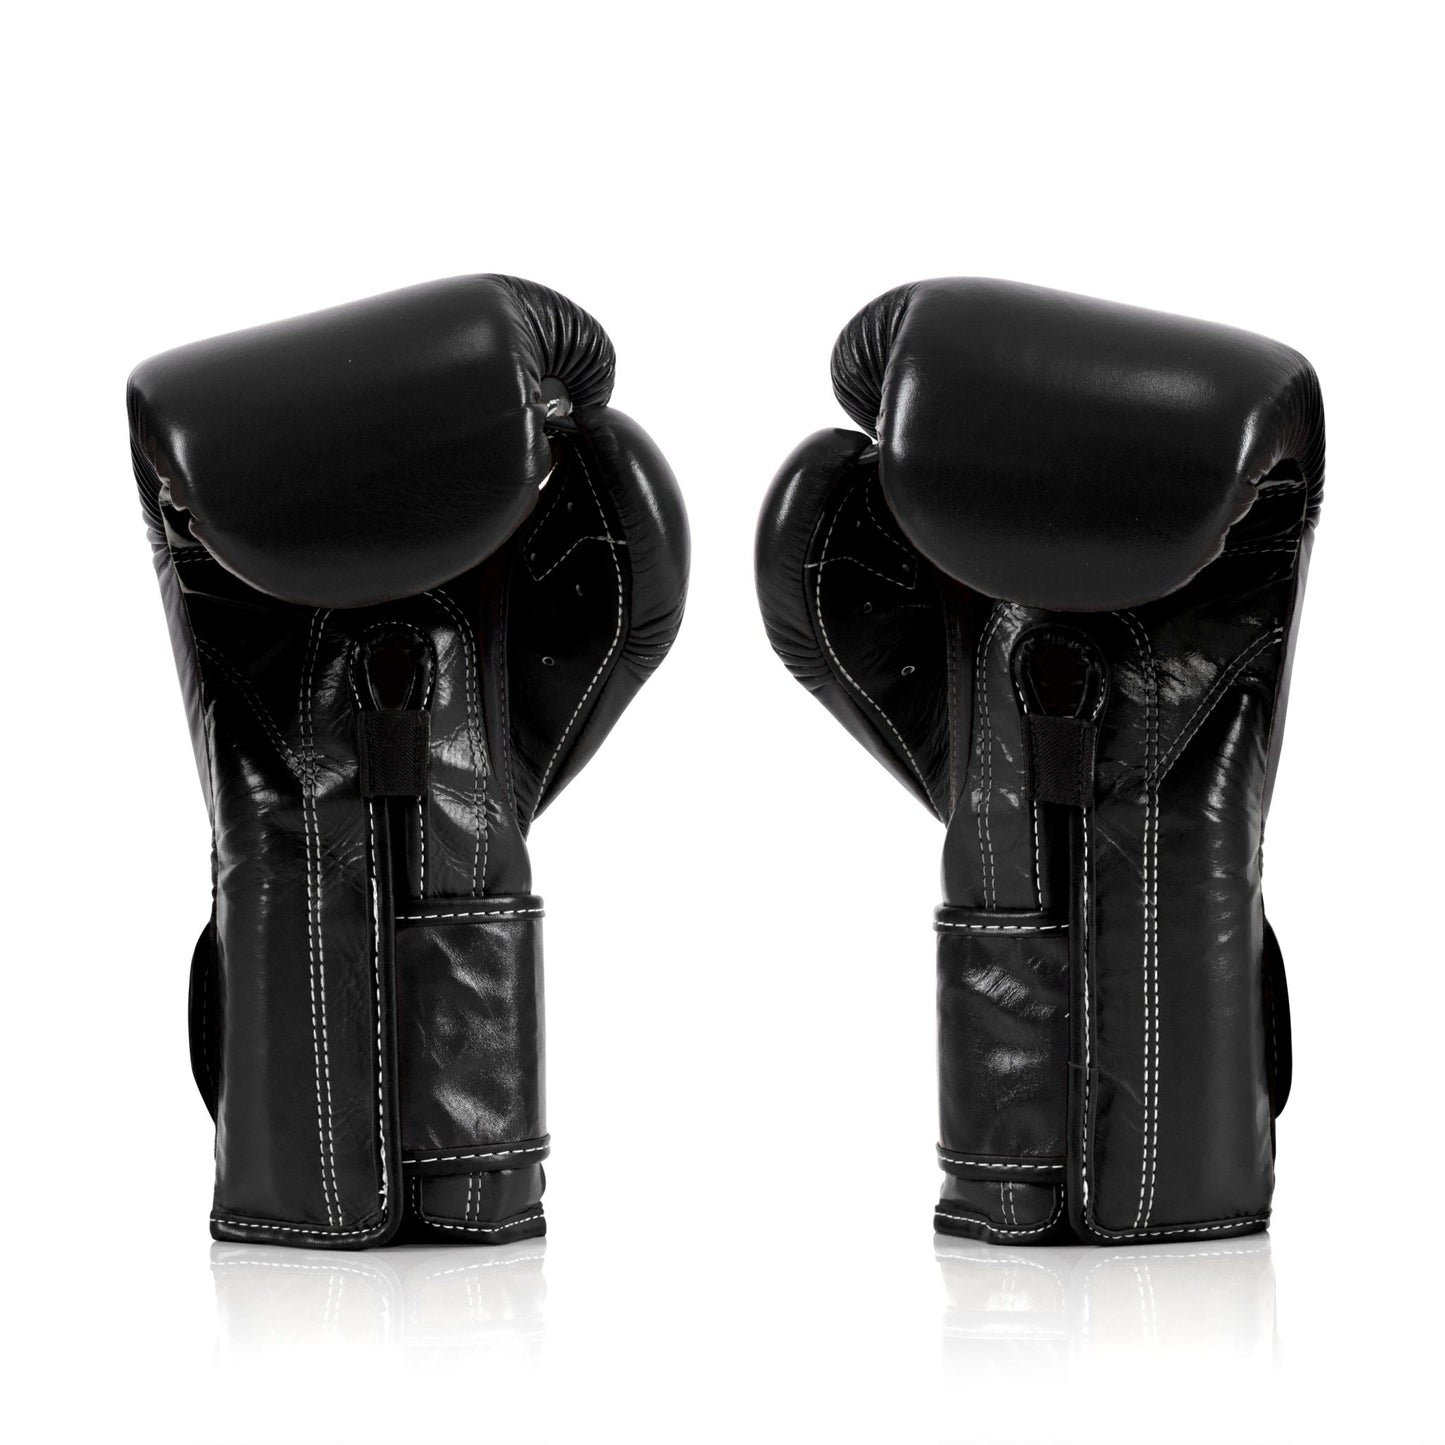 Fairtex Boxing Gloves BGV9 Black Fairtex